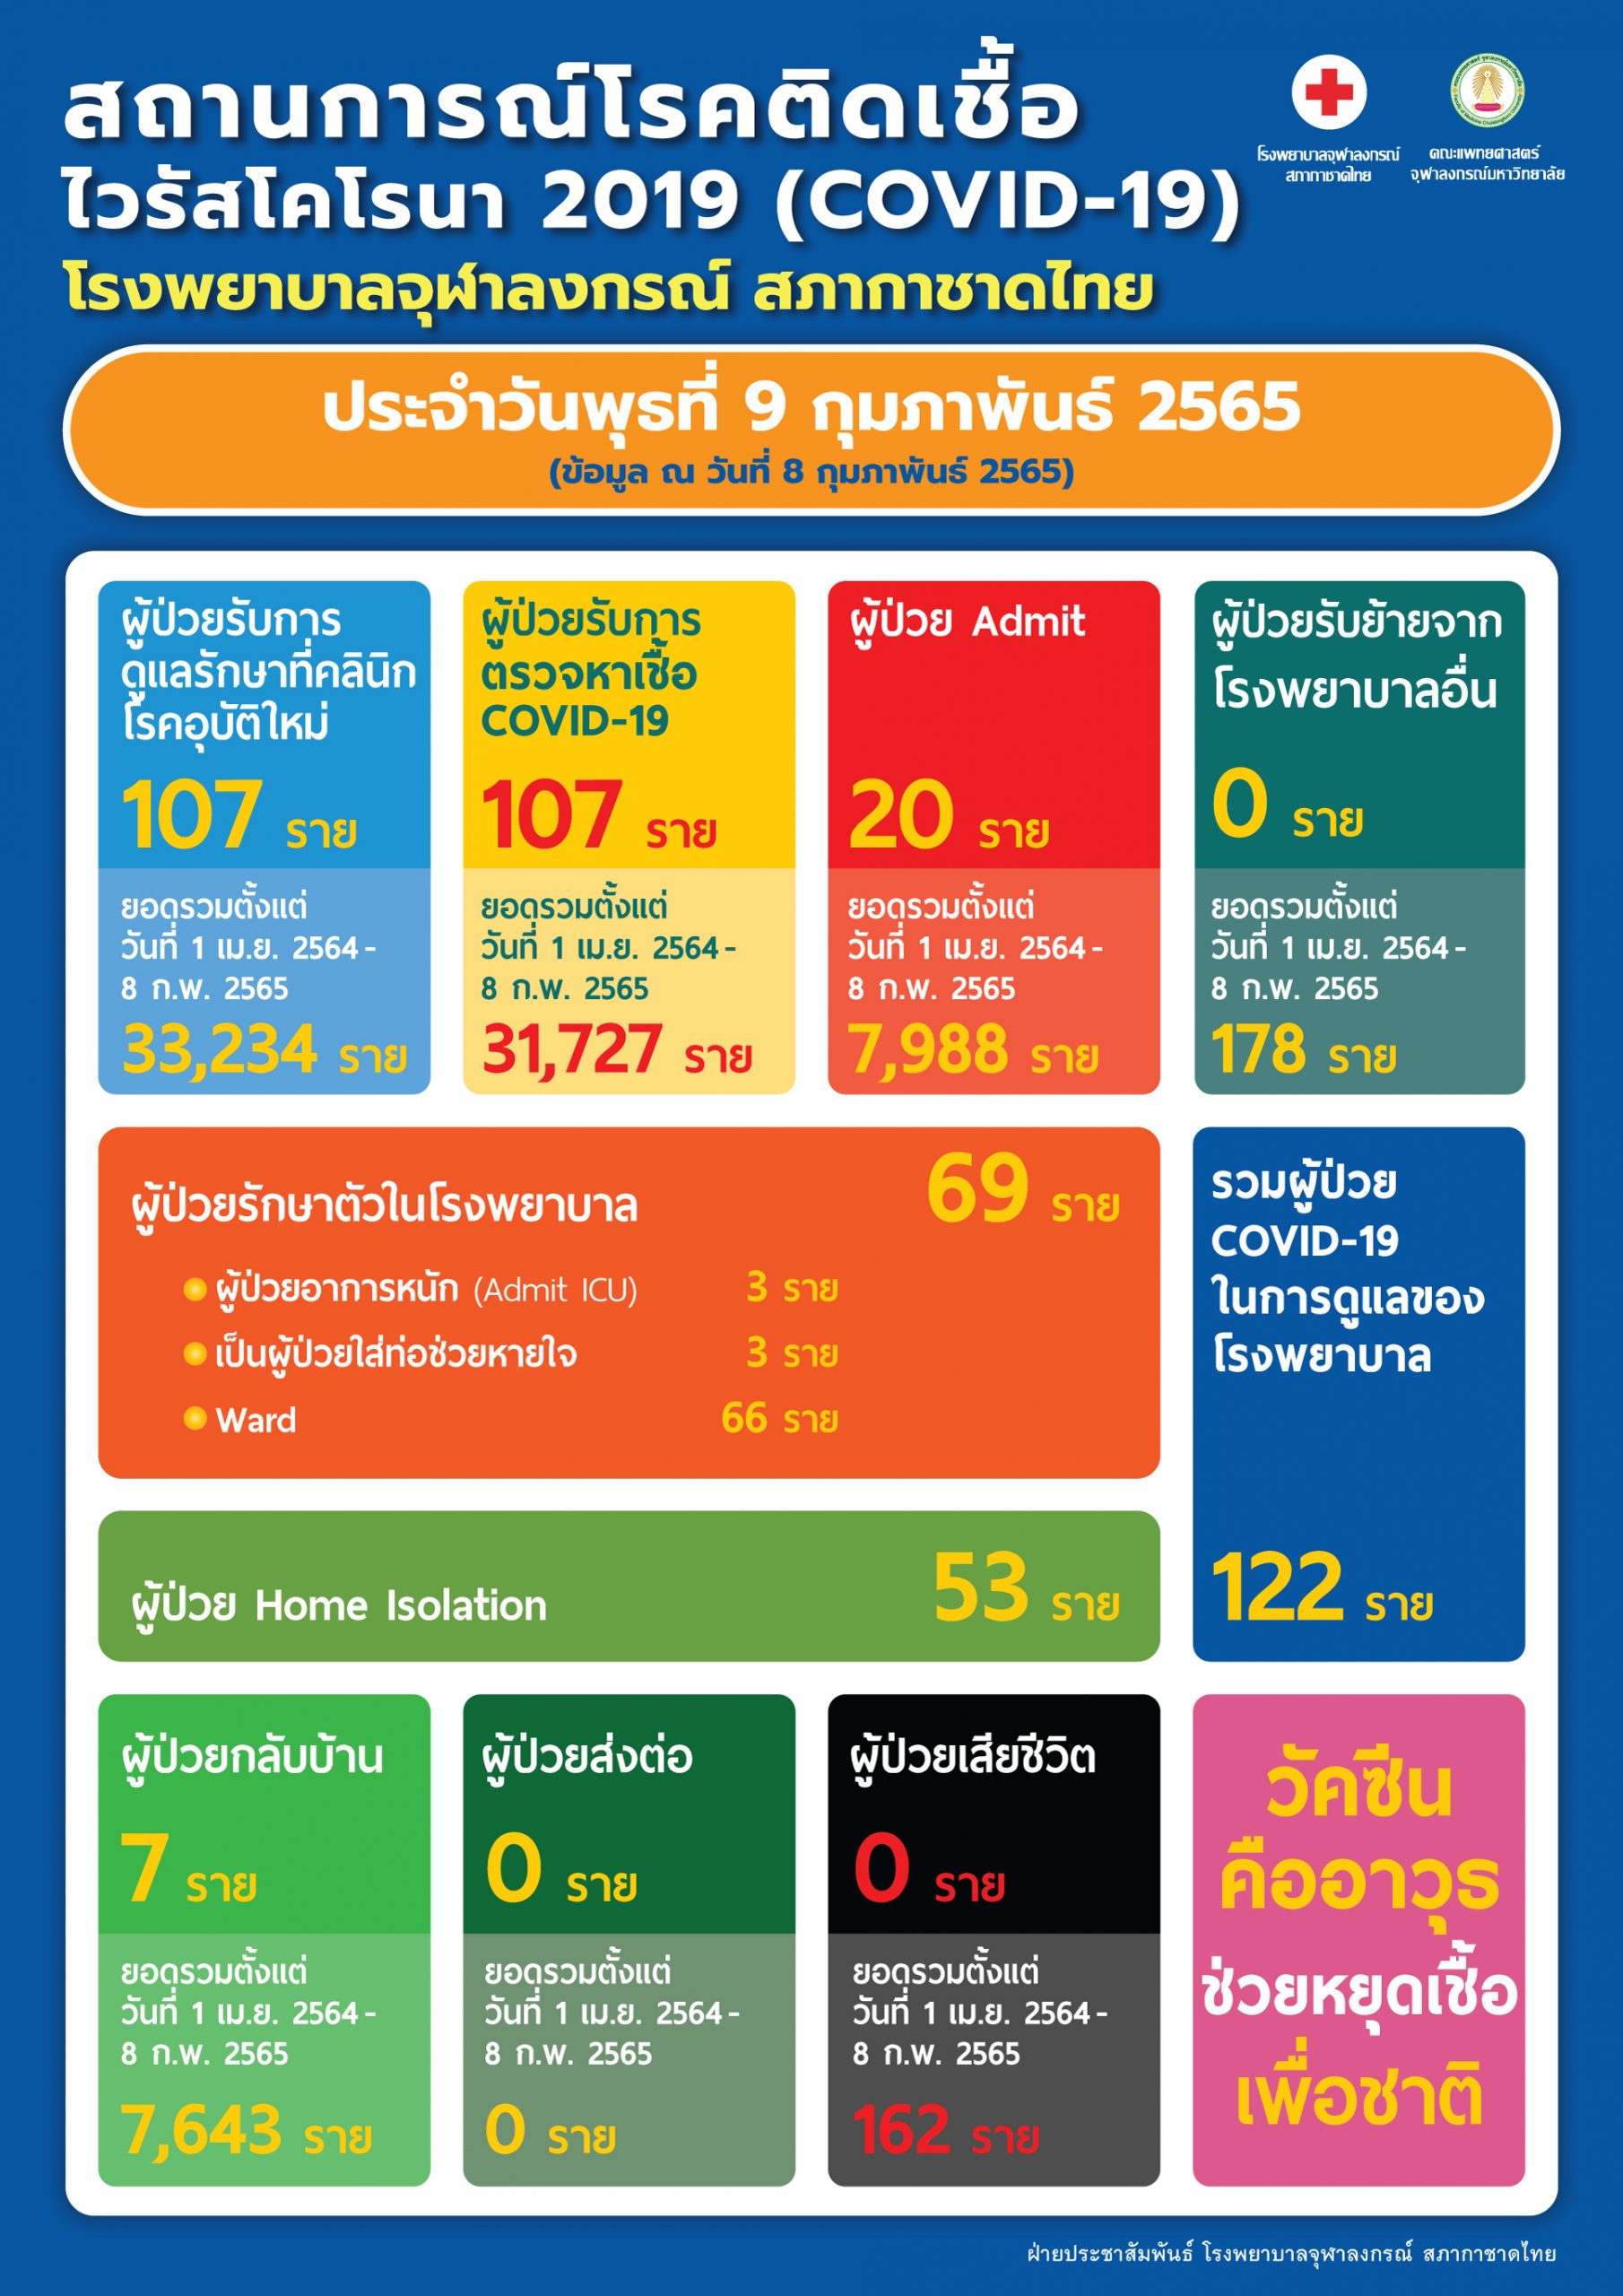 สถานการณ์โรคติดเชื้อไวรัสโคโรนา 2019 (COVID-19) โรงพยาบาลจุฬาลงกรณ์ สภากาชาดไทย ประจำวันพุธที่ 9 กุมภาพันธ์ 2565